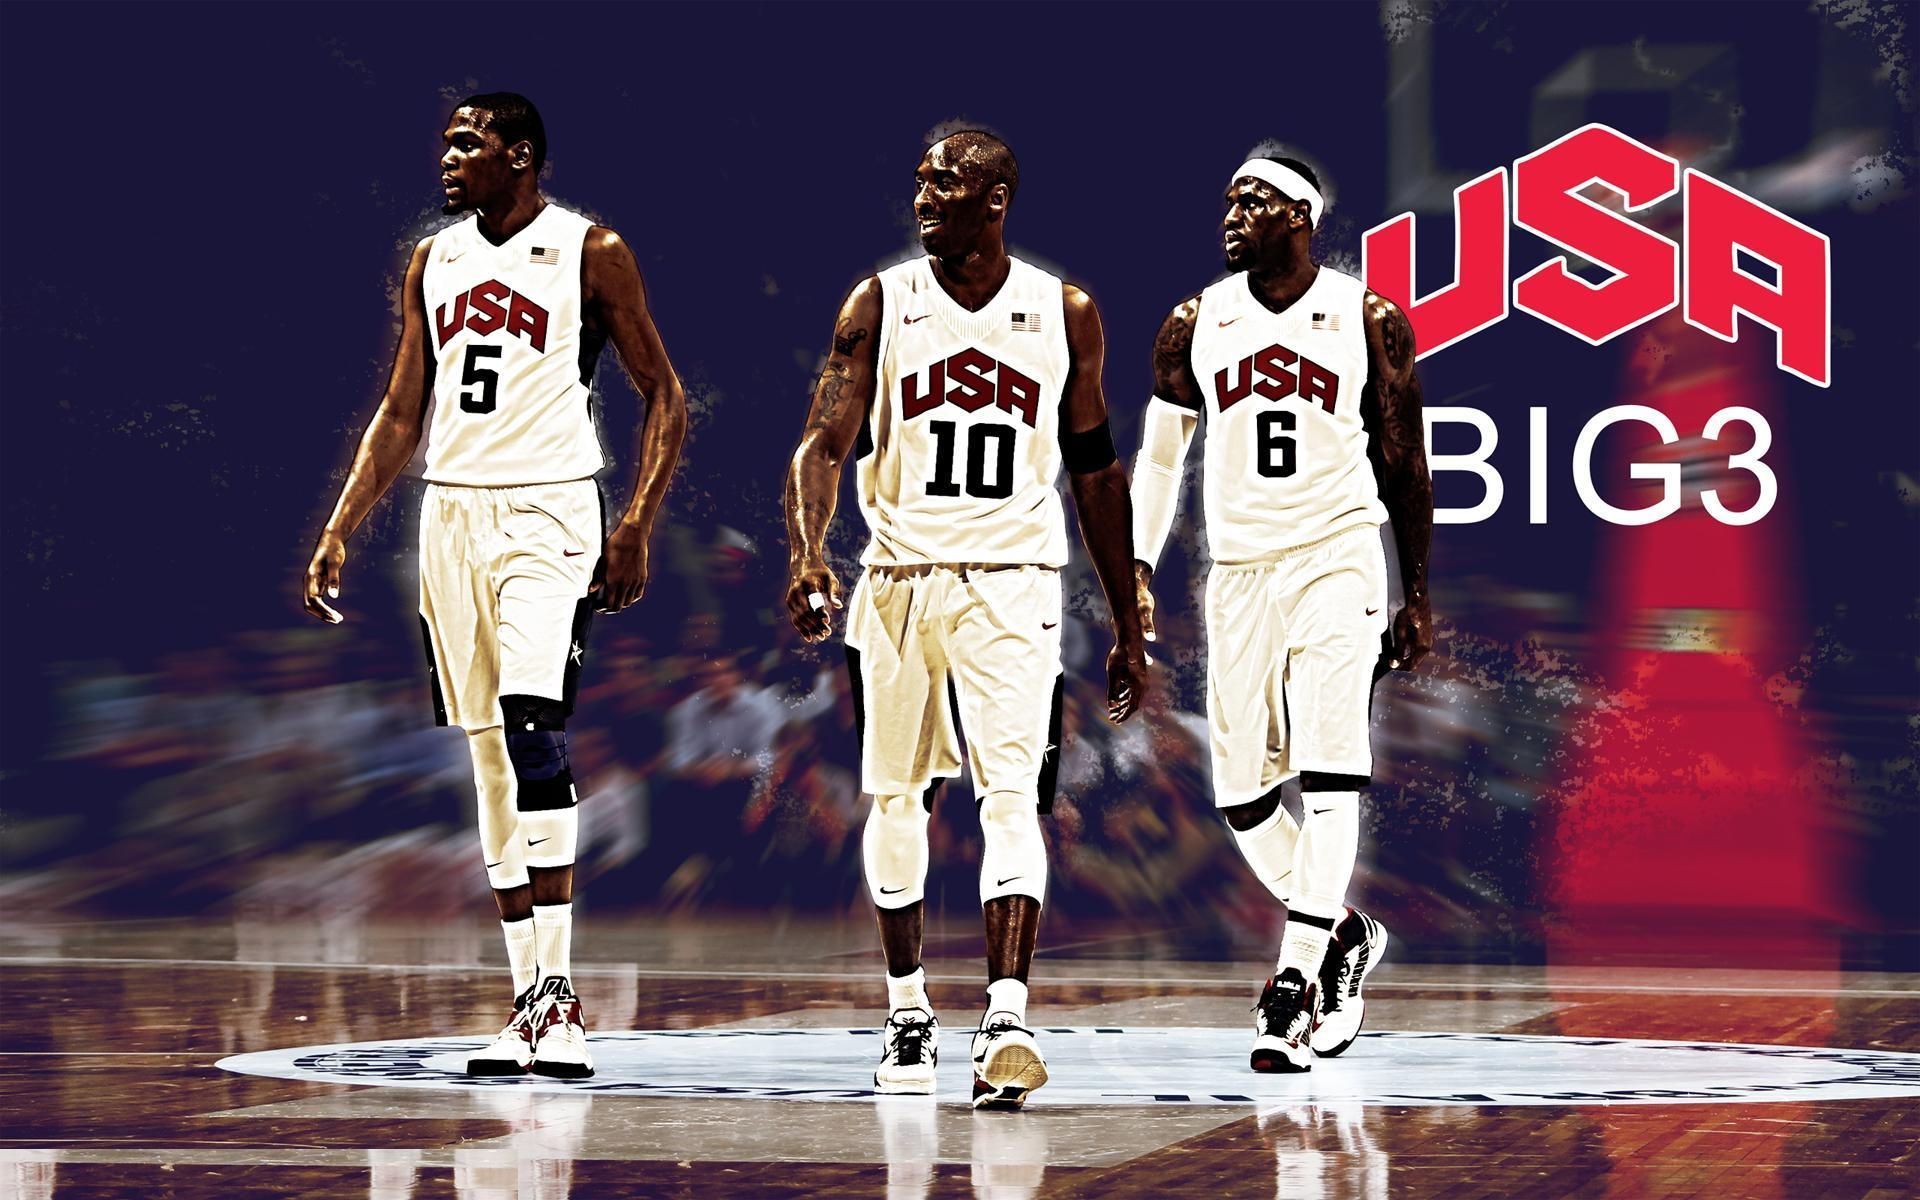 USA Basketball Wallpaper | USA Basketball Photos | Cool Wallpapers